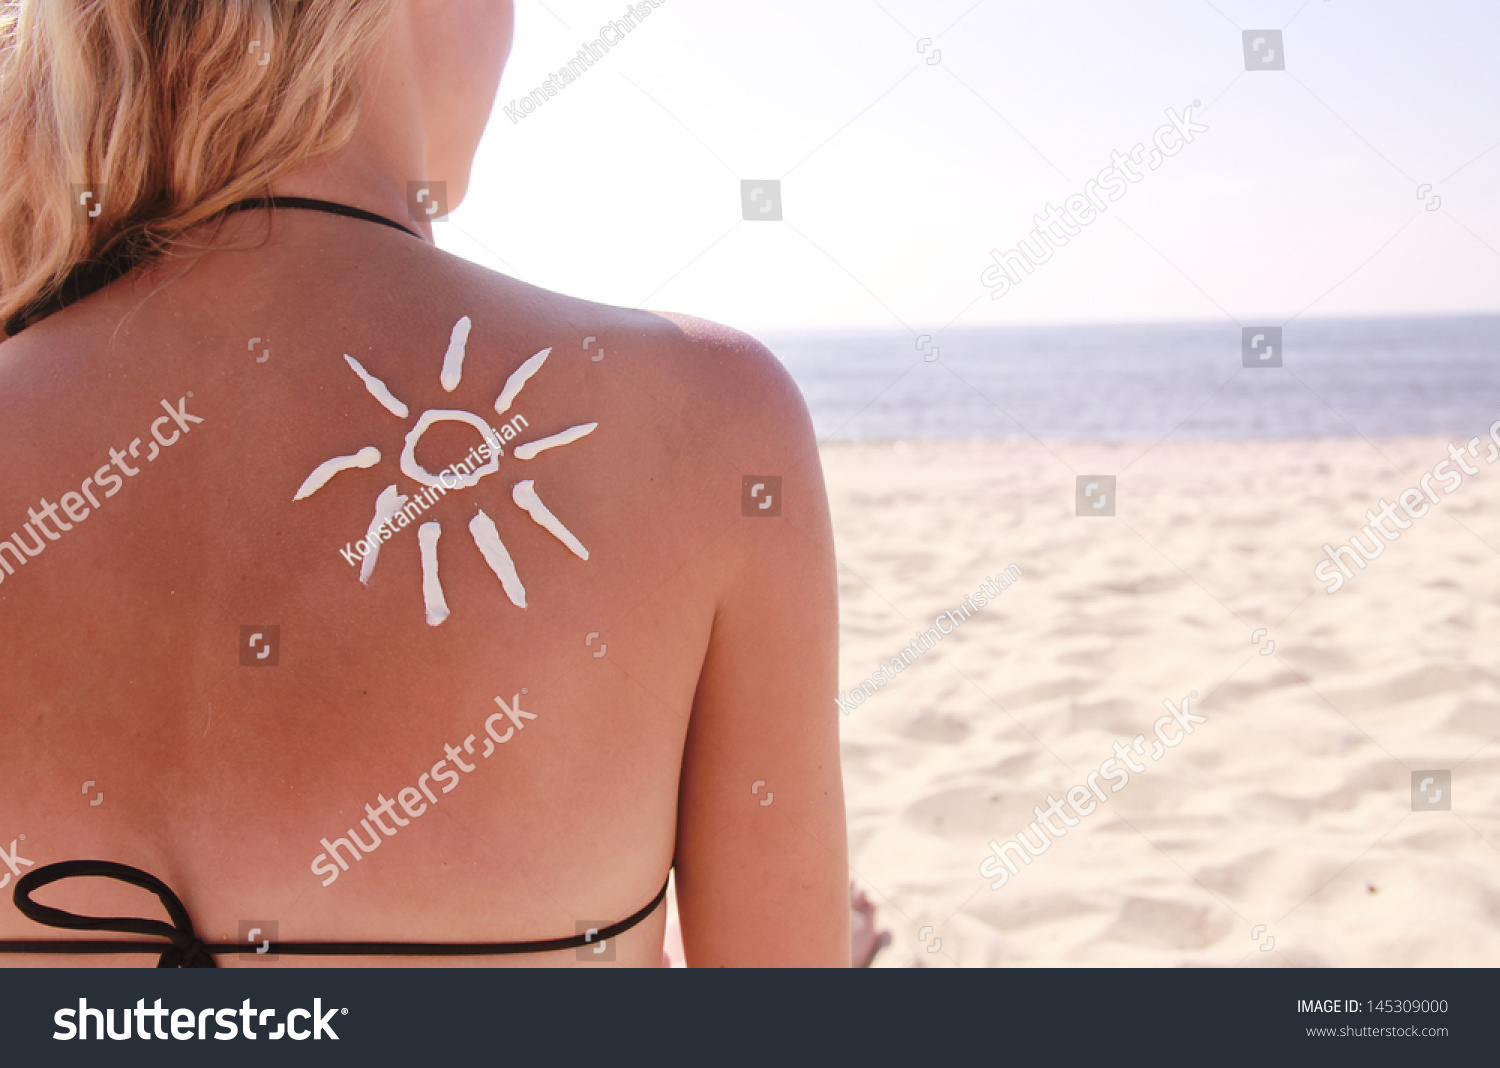 of sun cream on the female back on the beach #145309000